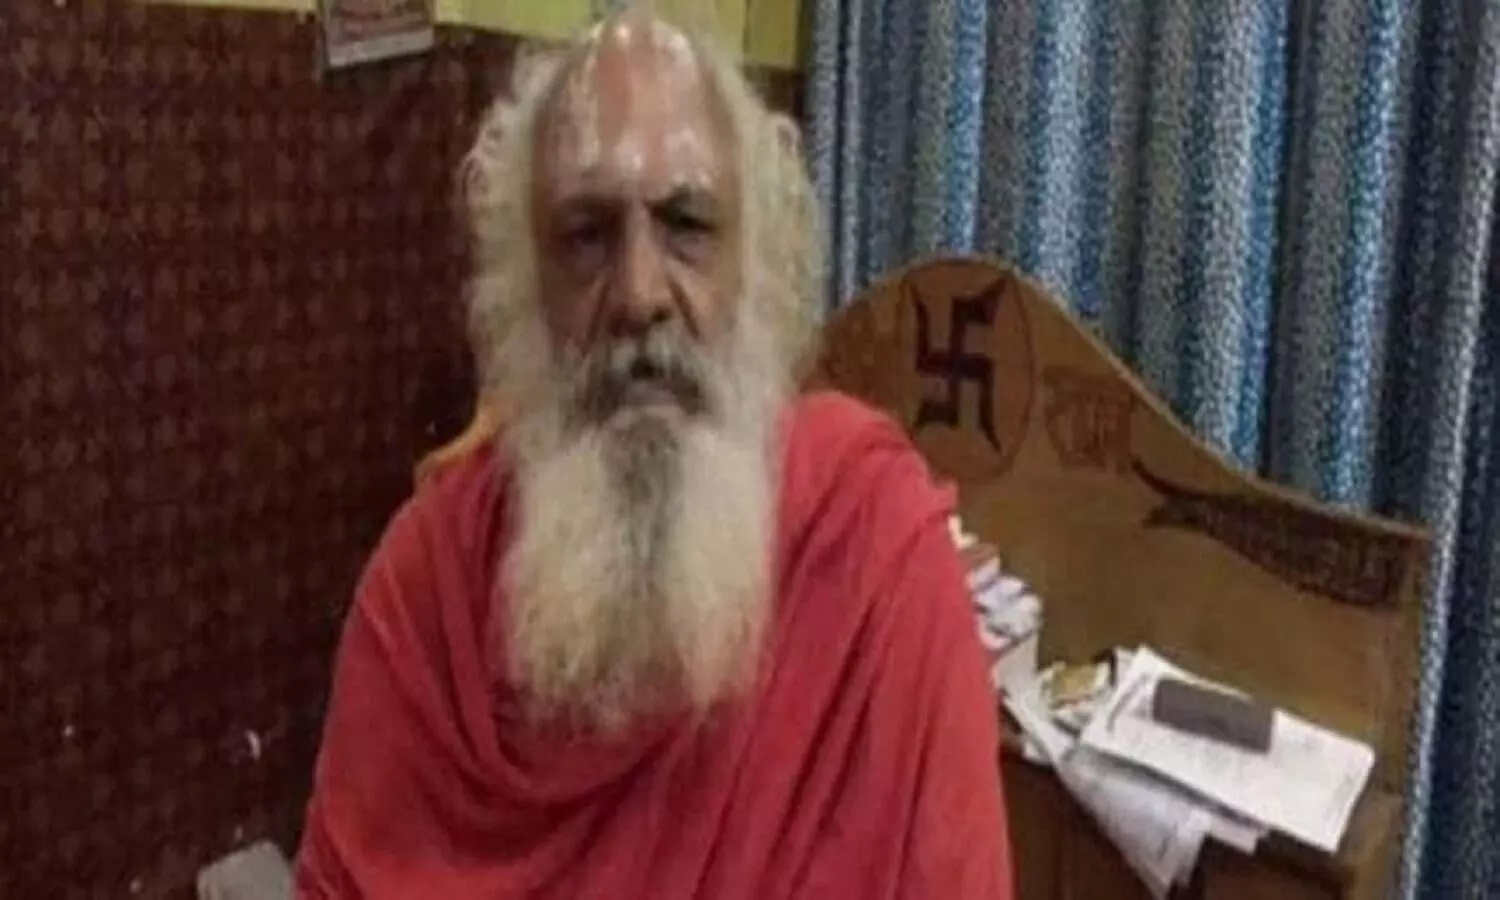 महंत धर्म दास ने राम जन्मभूमि ट्रस्ट भंग कर गिरफ्तारी की मांग की है